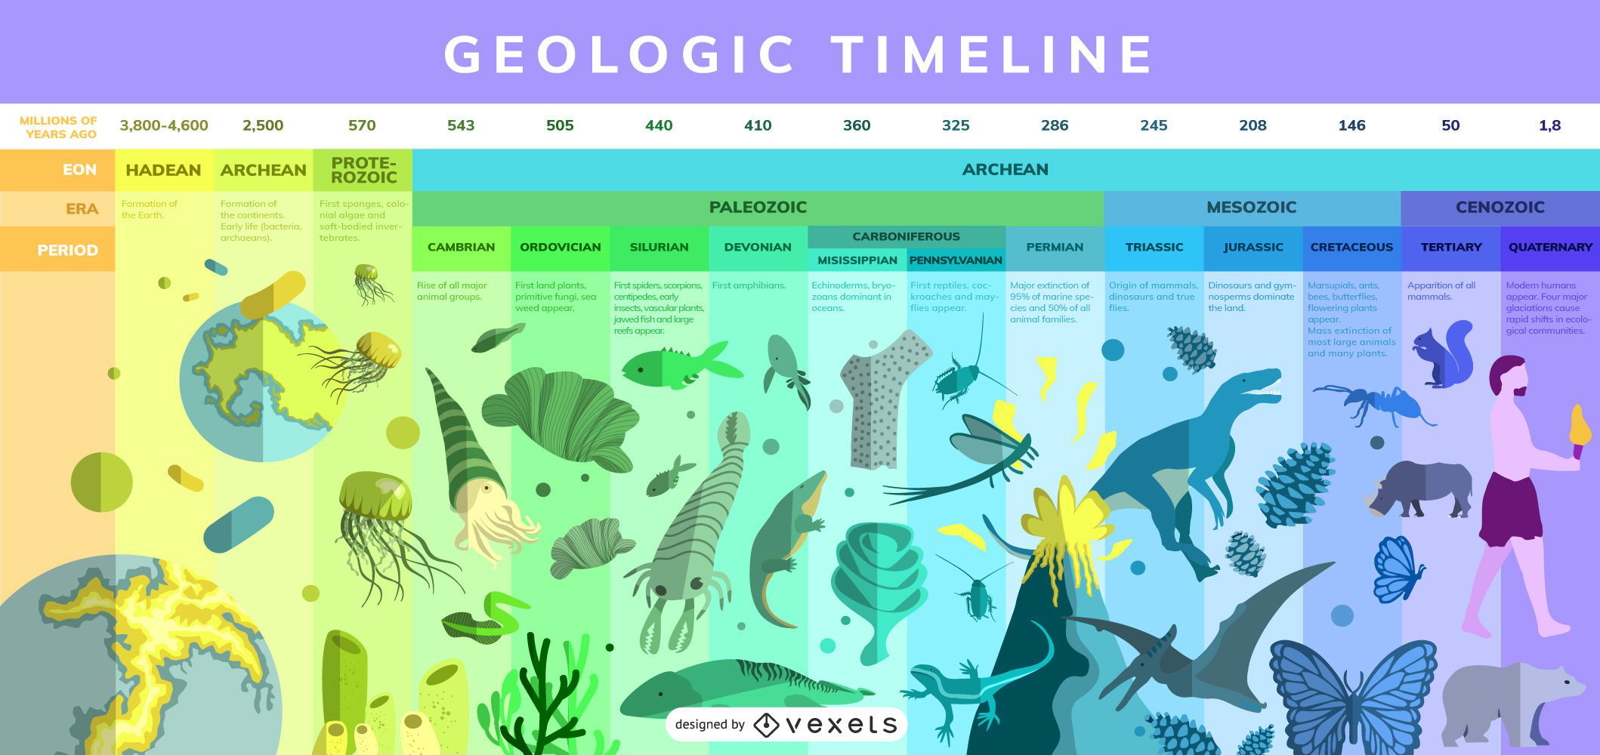 Linea Del Tiempo De La Era Geologica Linea Del Tiempo De Las Eras ...